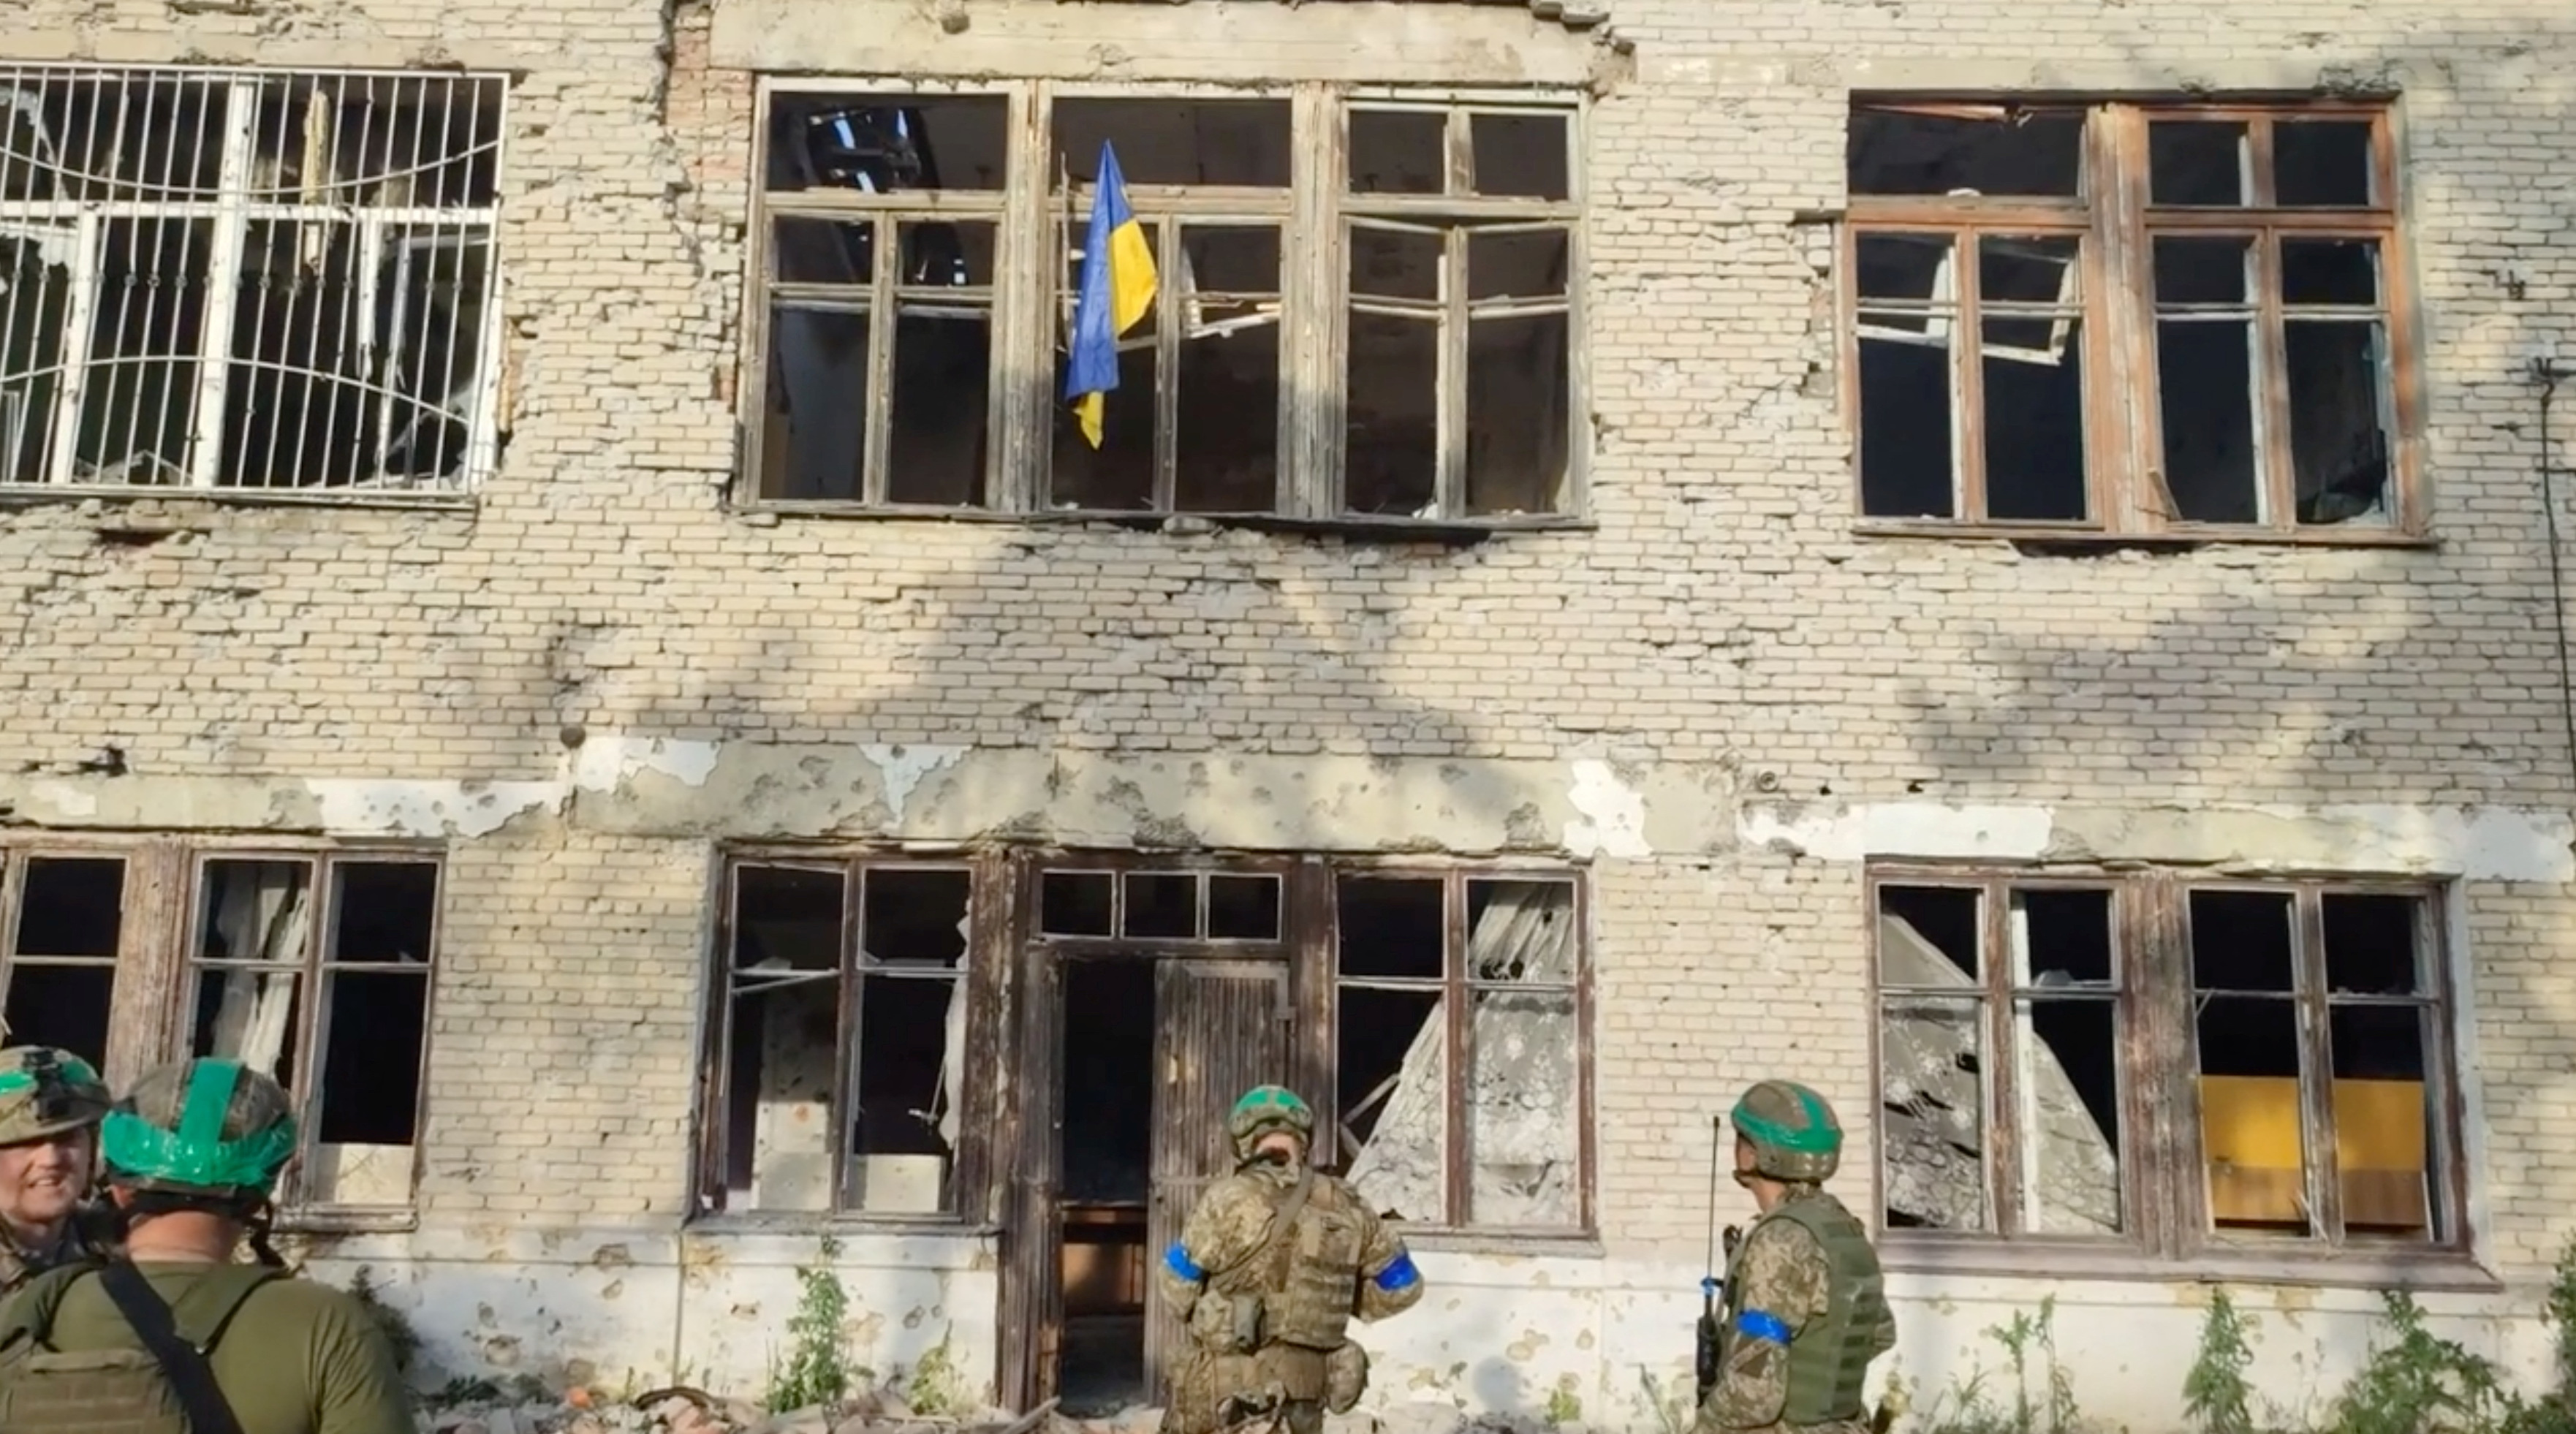 La bandera ucraniana en un edificio de la localidad (Ejército de Ucrania via REUTERS)